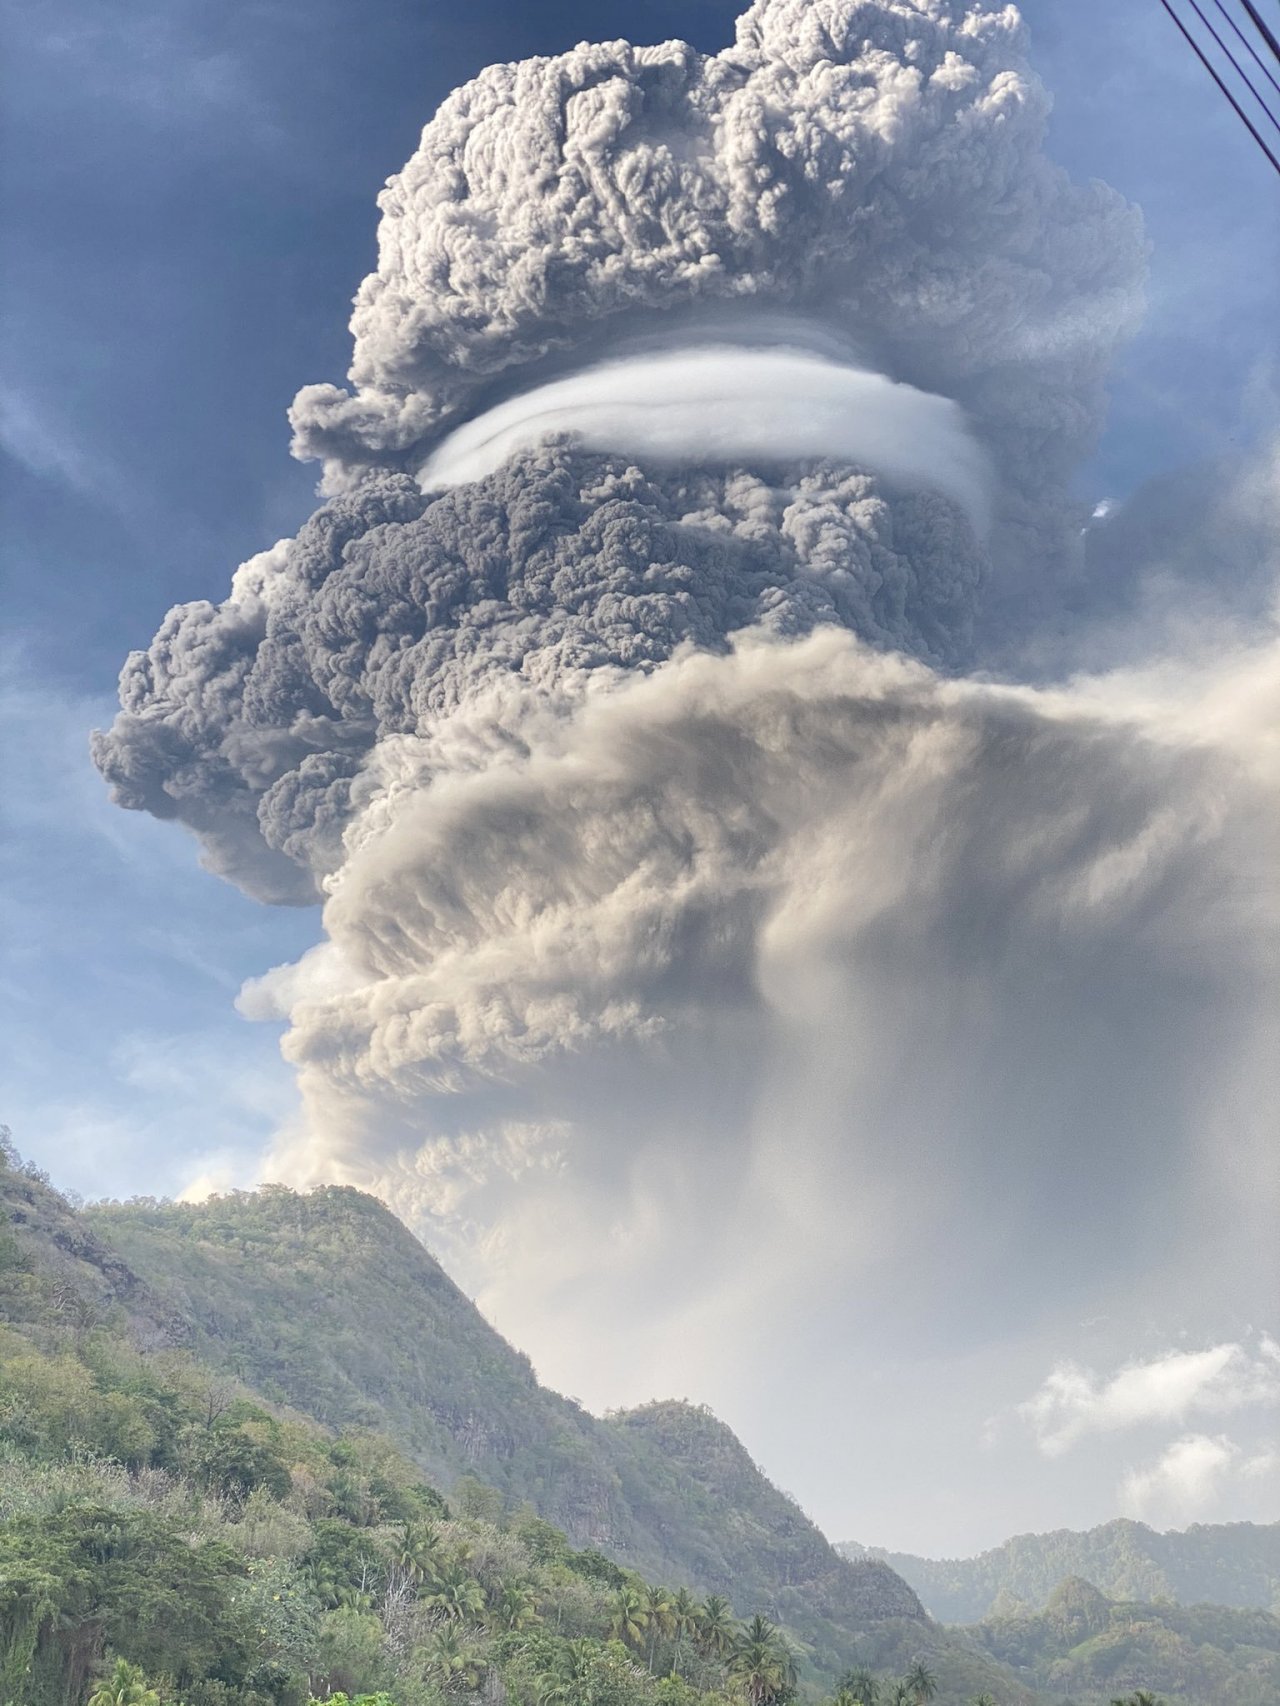 友邦聖文森火山爆發 台緊急賑災30萬美元